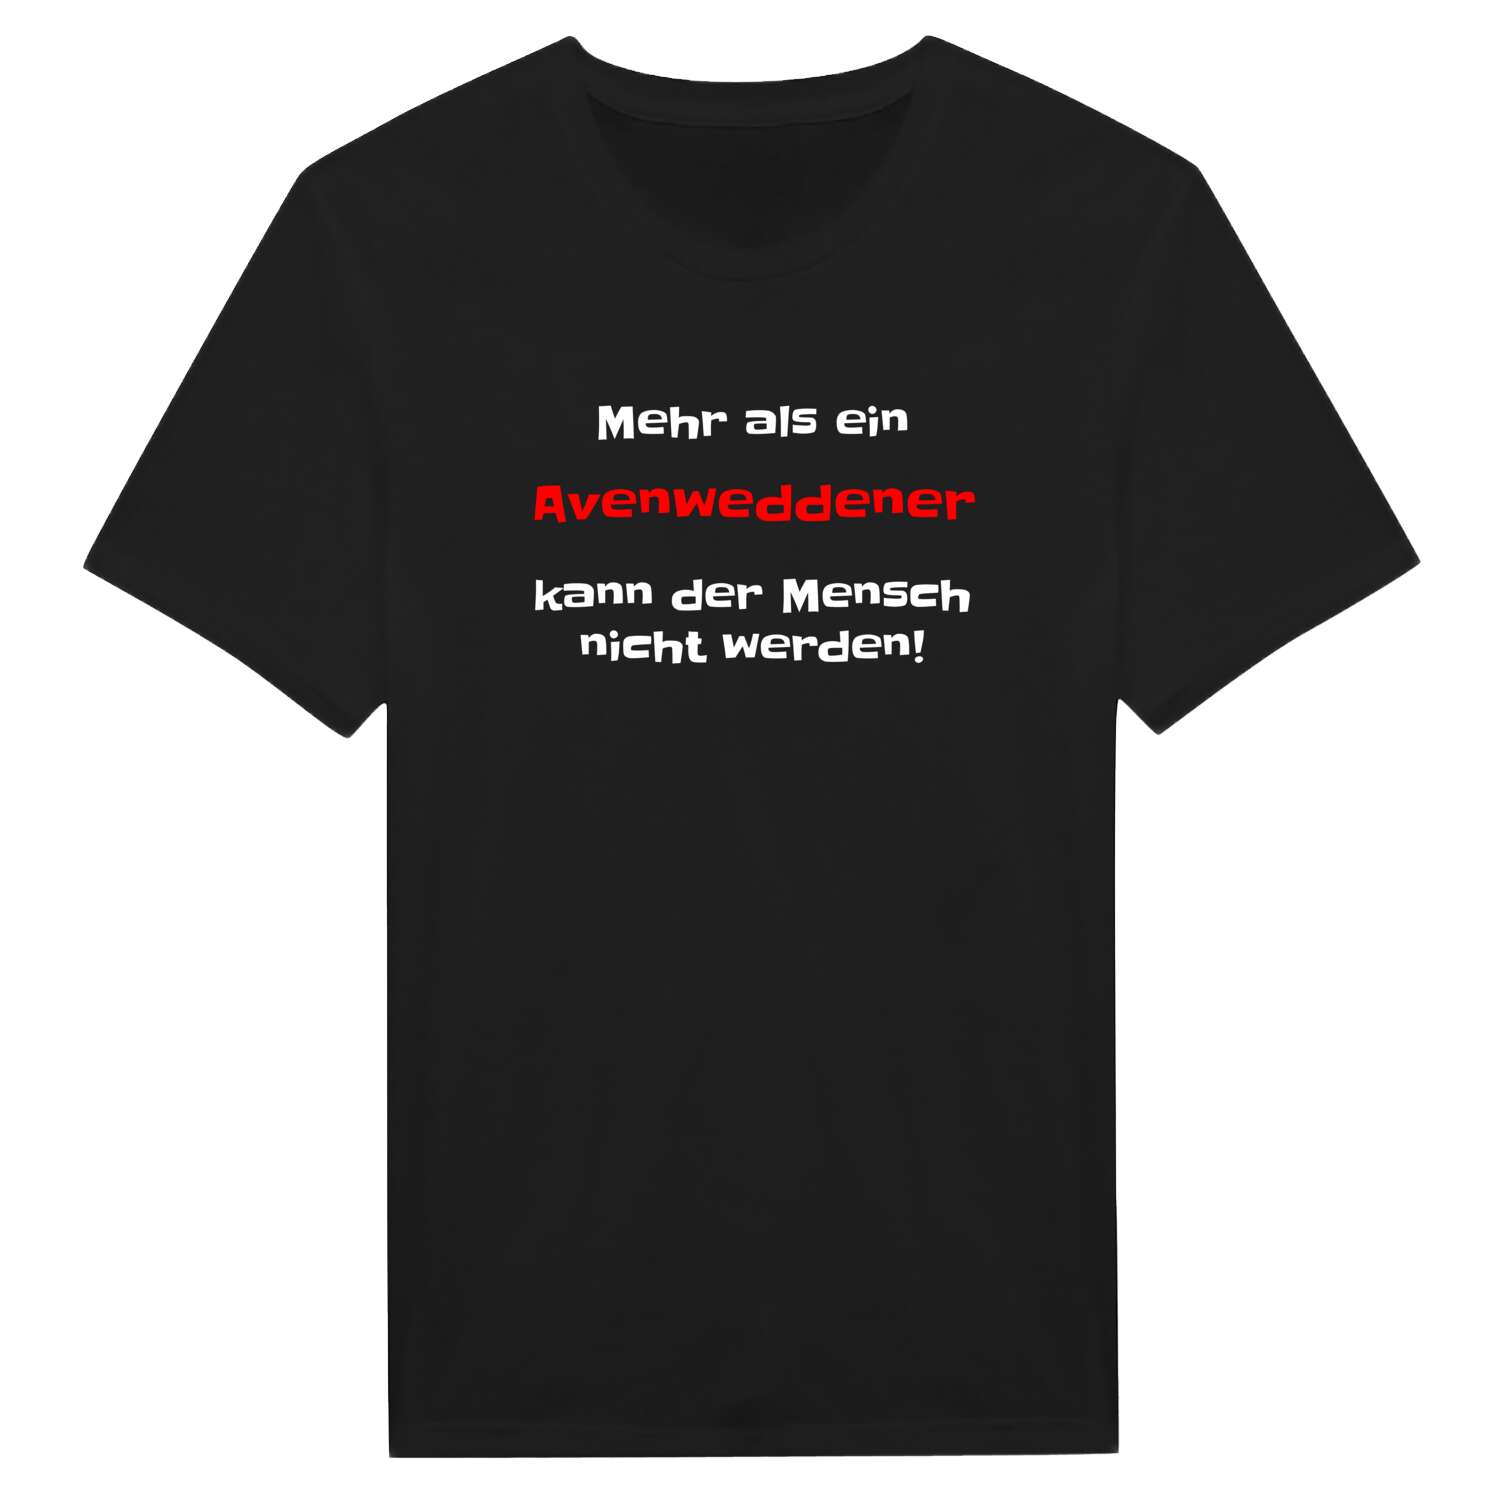 Avenwedde T-Shirt »Mehr als ein«